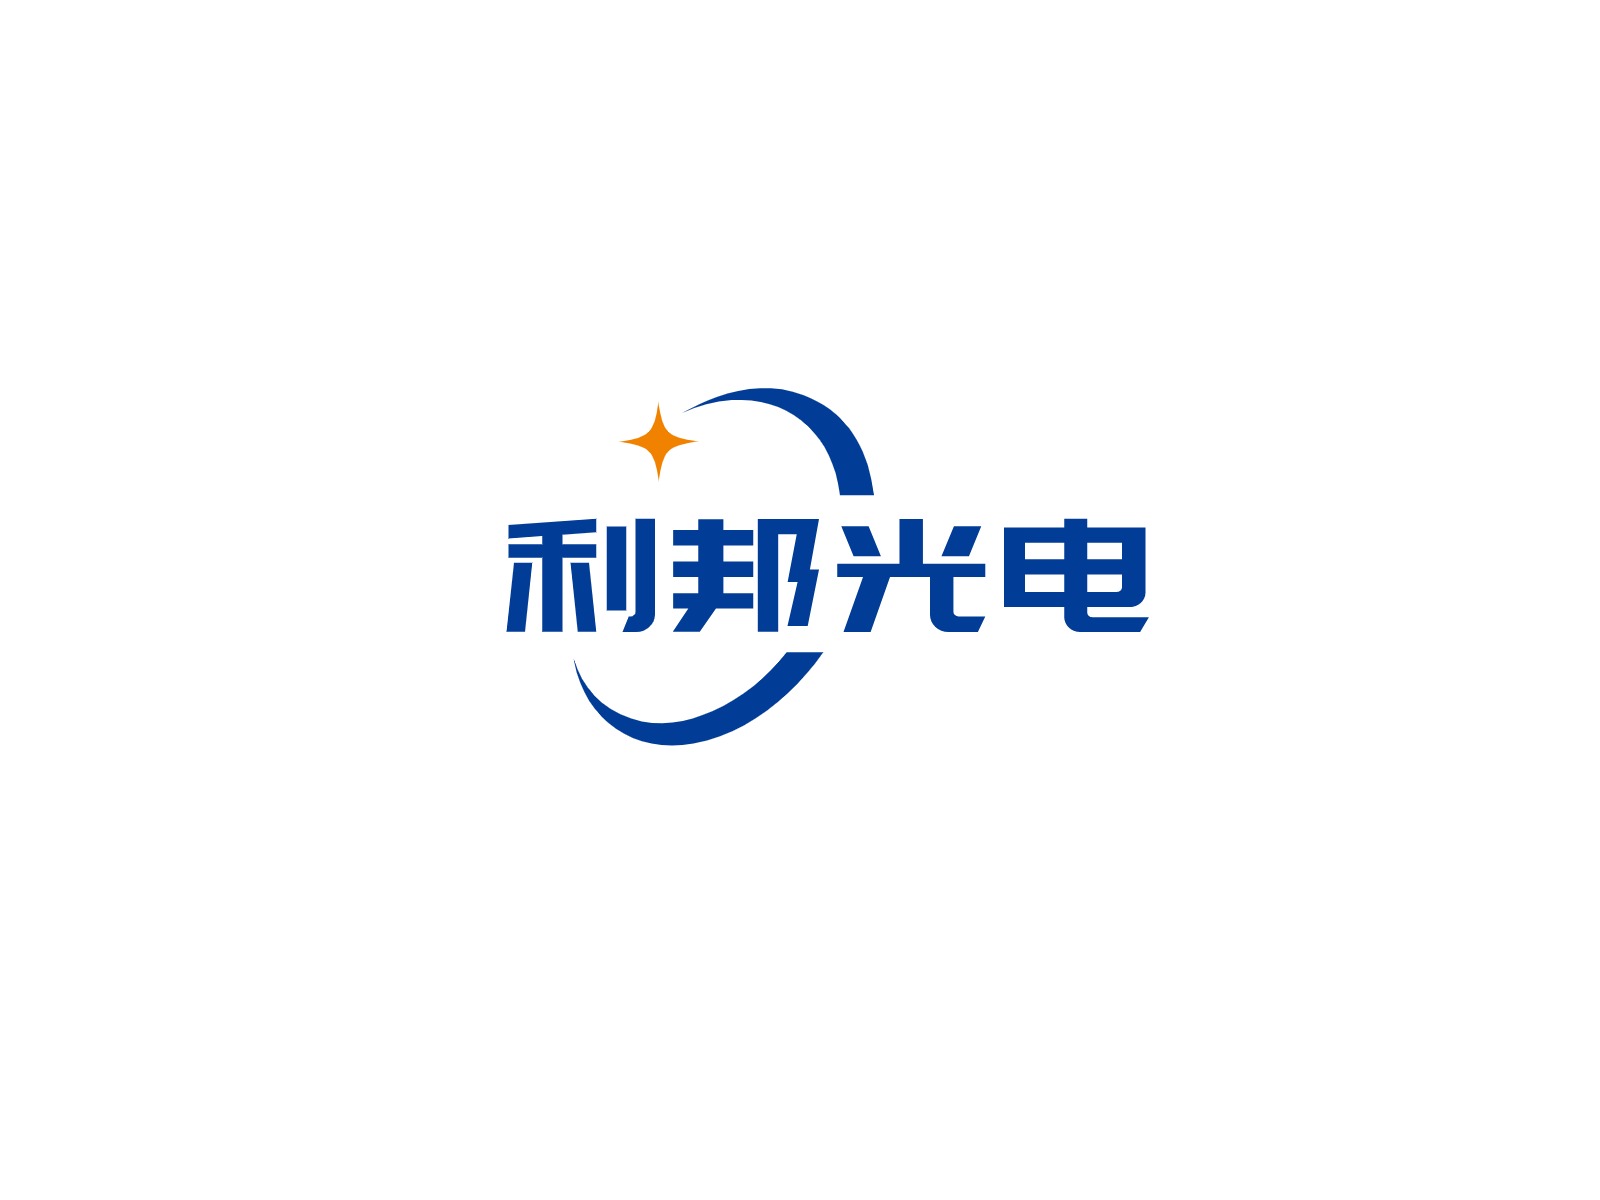 利邦光电公司logo设计